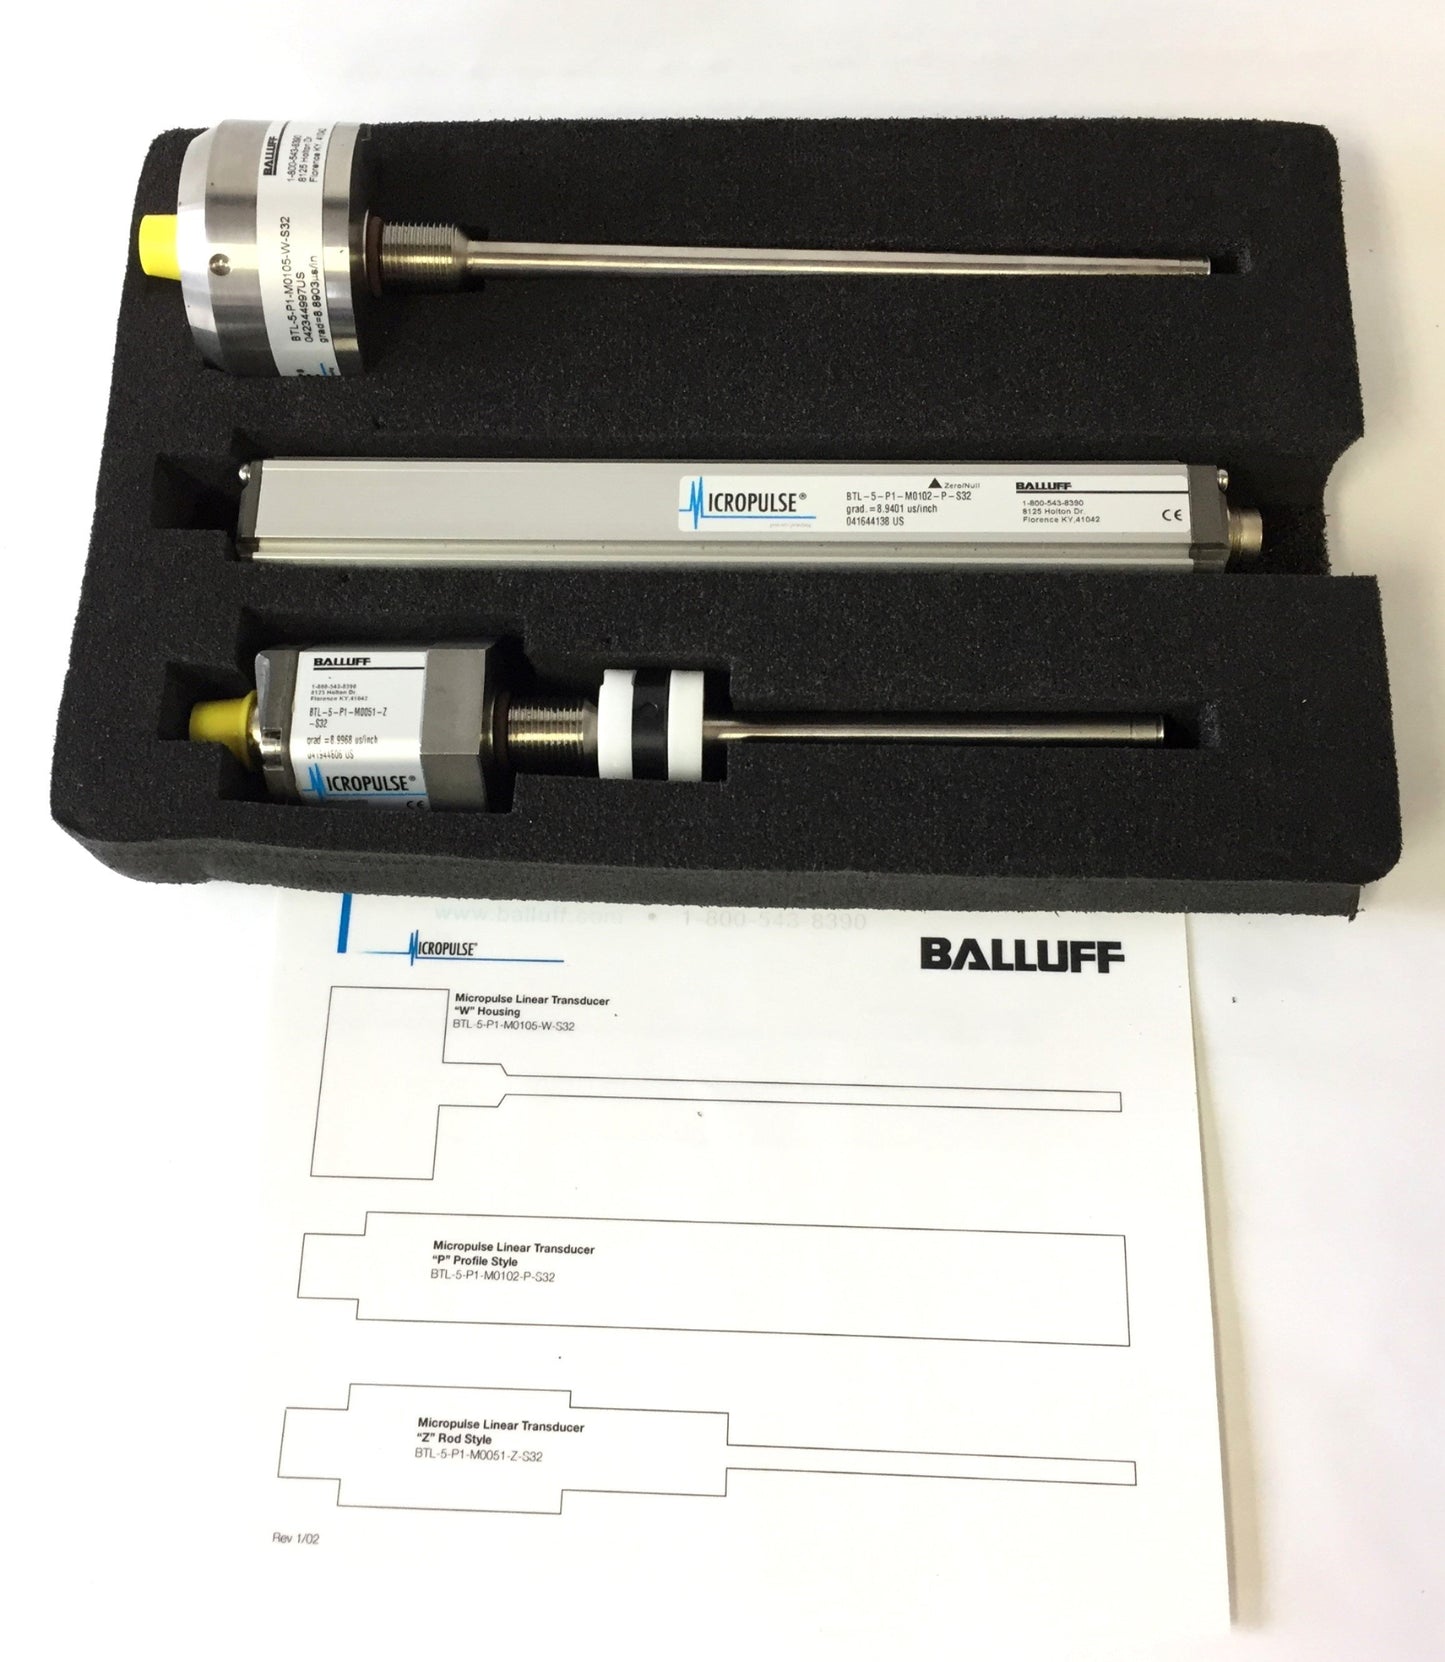 Used Balluff Micropulse BTL-5-P1 Linear Transducers Kit, Digital Display BDD-100